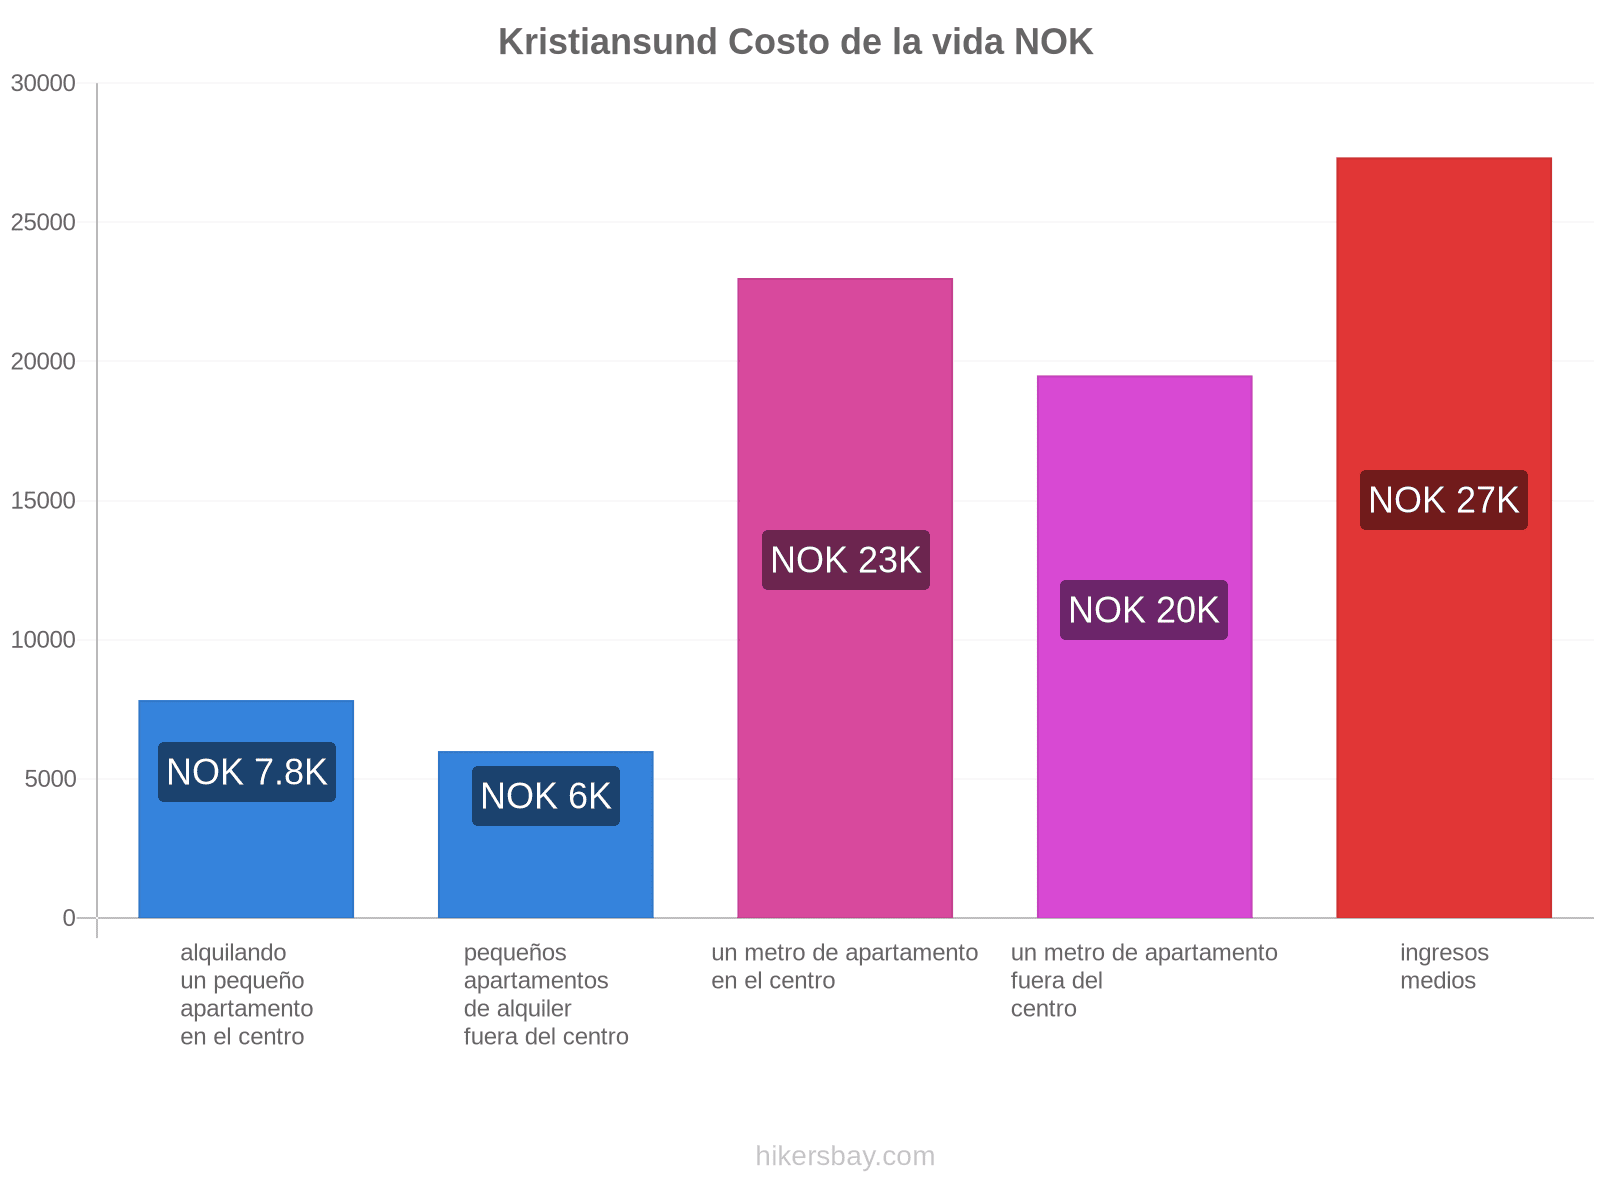 Kristiansund costo de la vida hikersbay.com